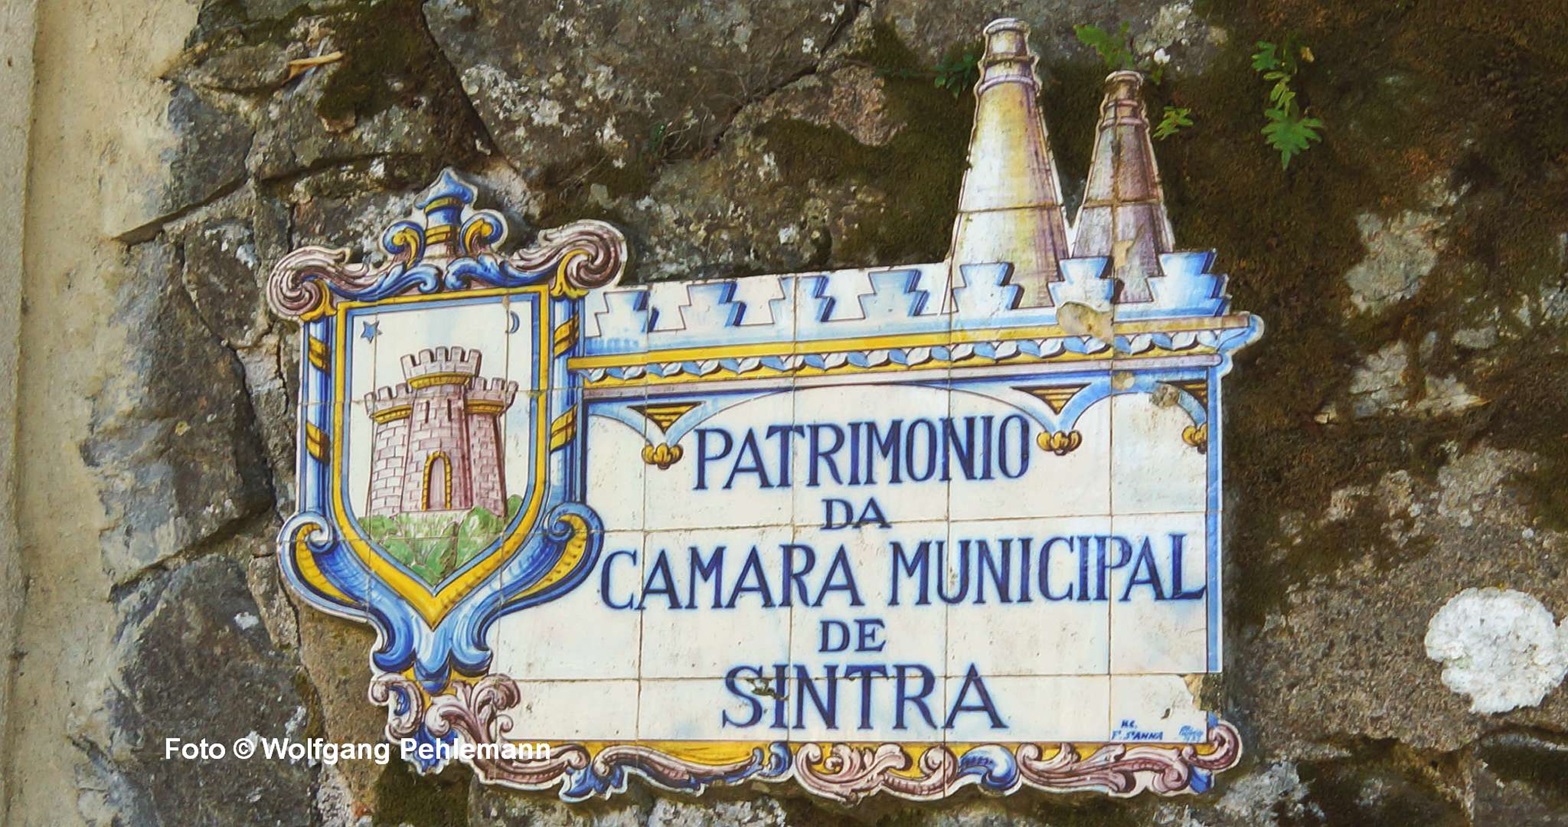 Patrimonio da camara municipal de Sintra es gehört denen vom Rathaus - Foto © Wolfgang Pehlemann DSC02582